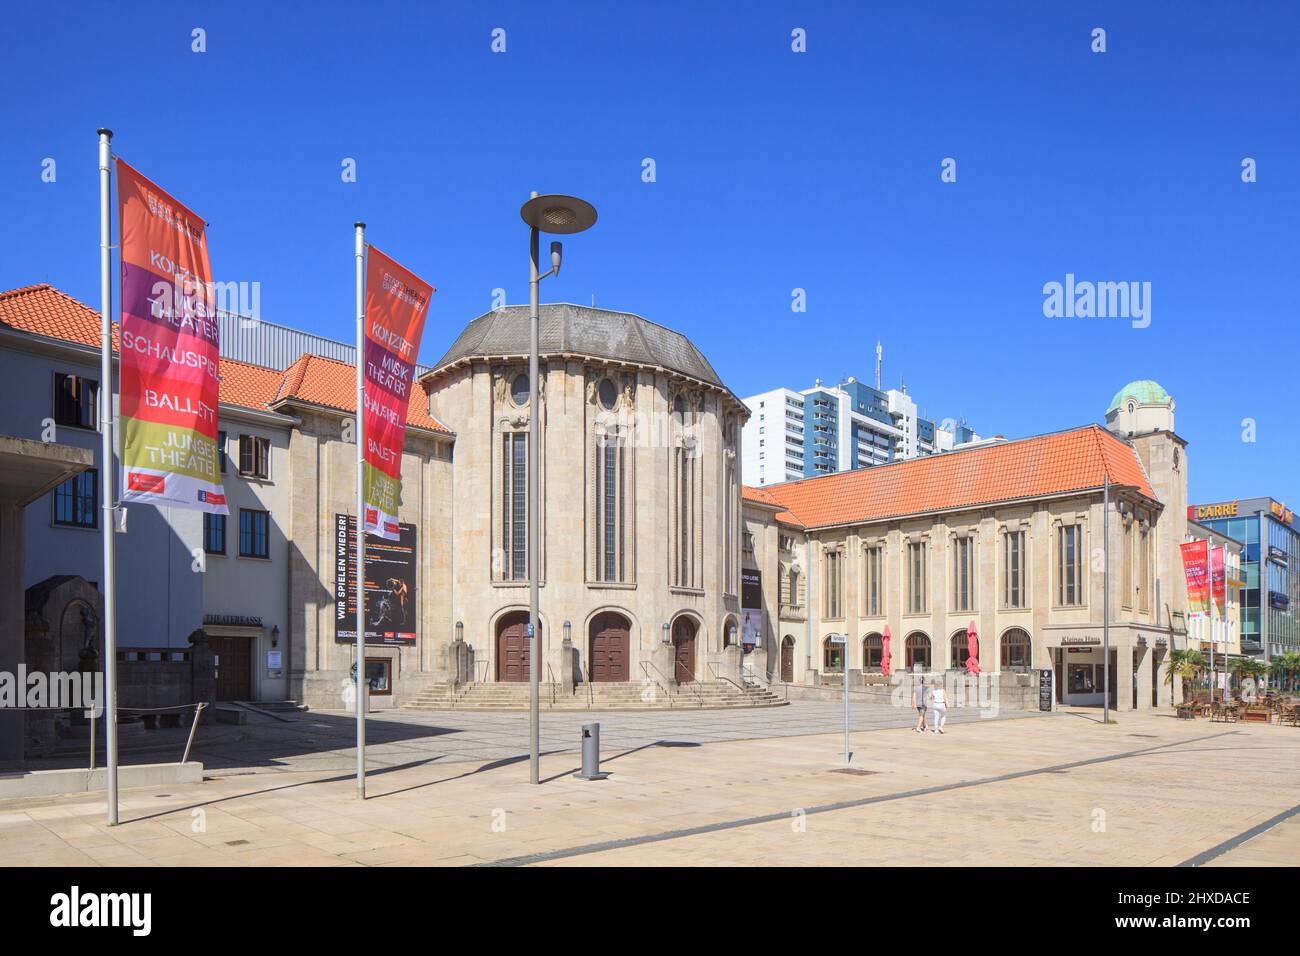 Stadttheater großes Haus am Theodor-Heuss-Platz, Bremerhaven, Bremen, Deutschland, europa Stockfoto